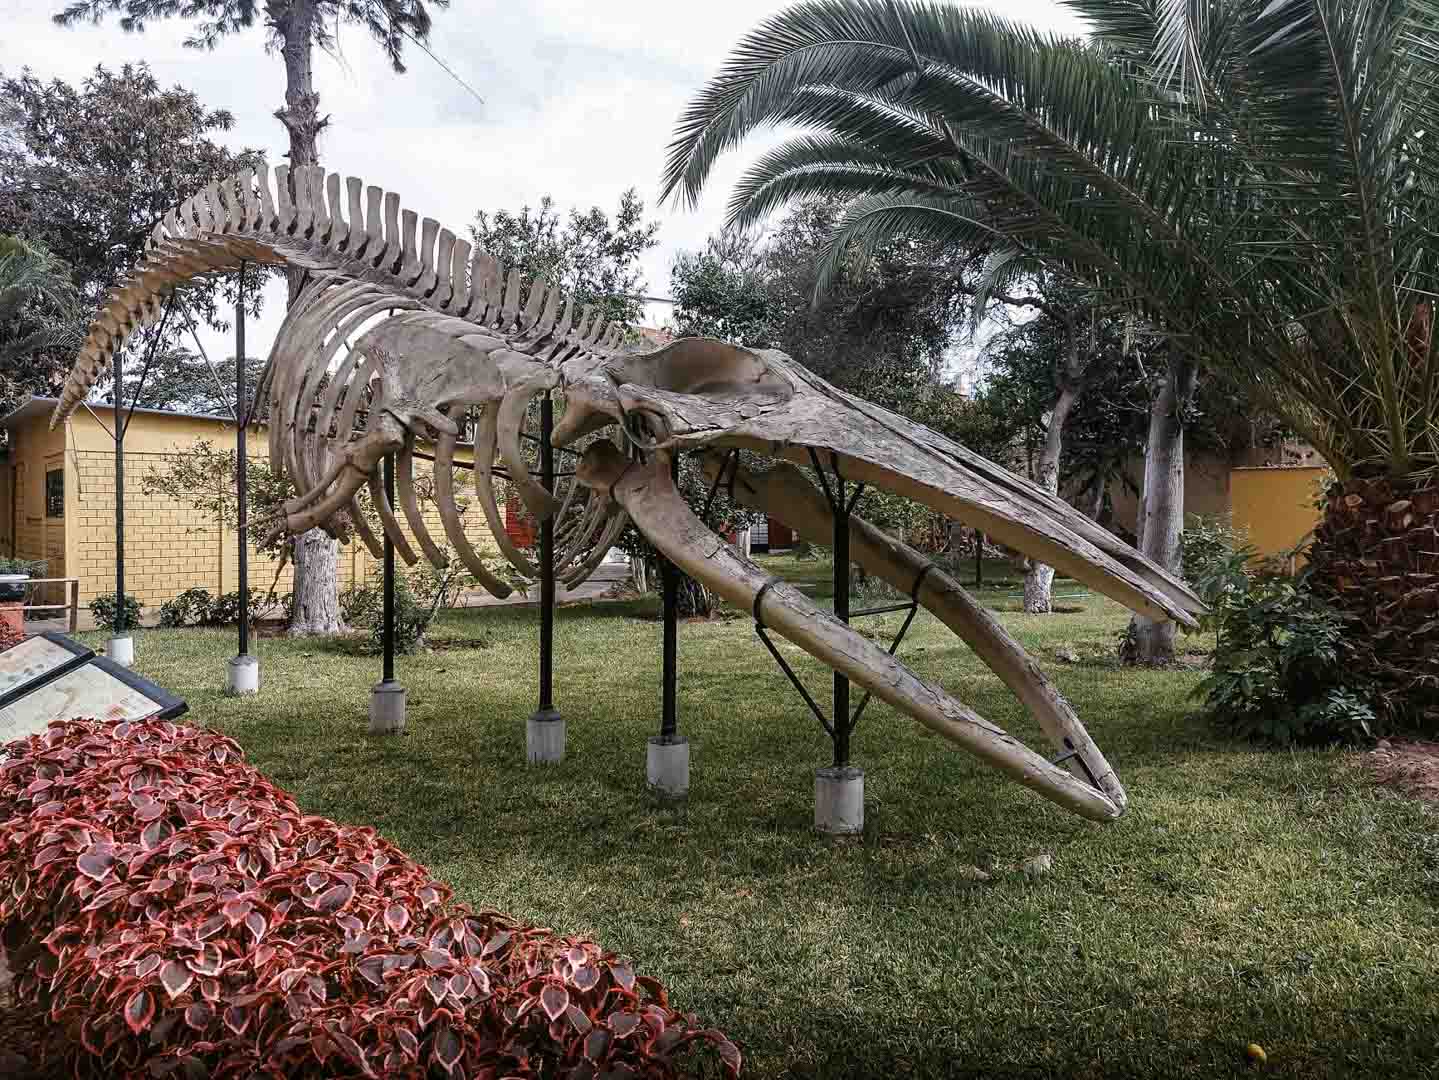 Museo de Historia Natural, Lima